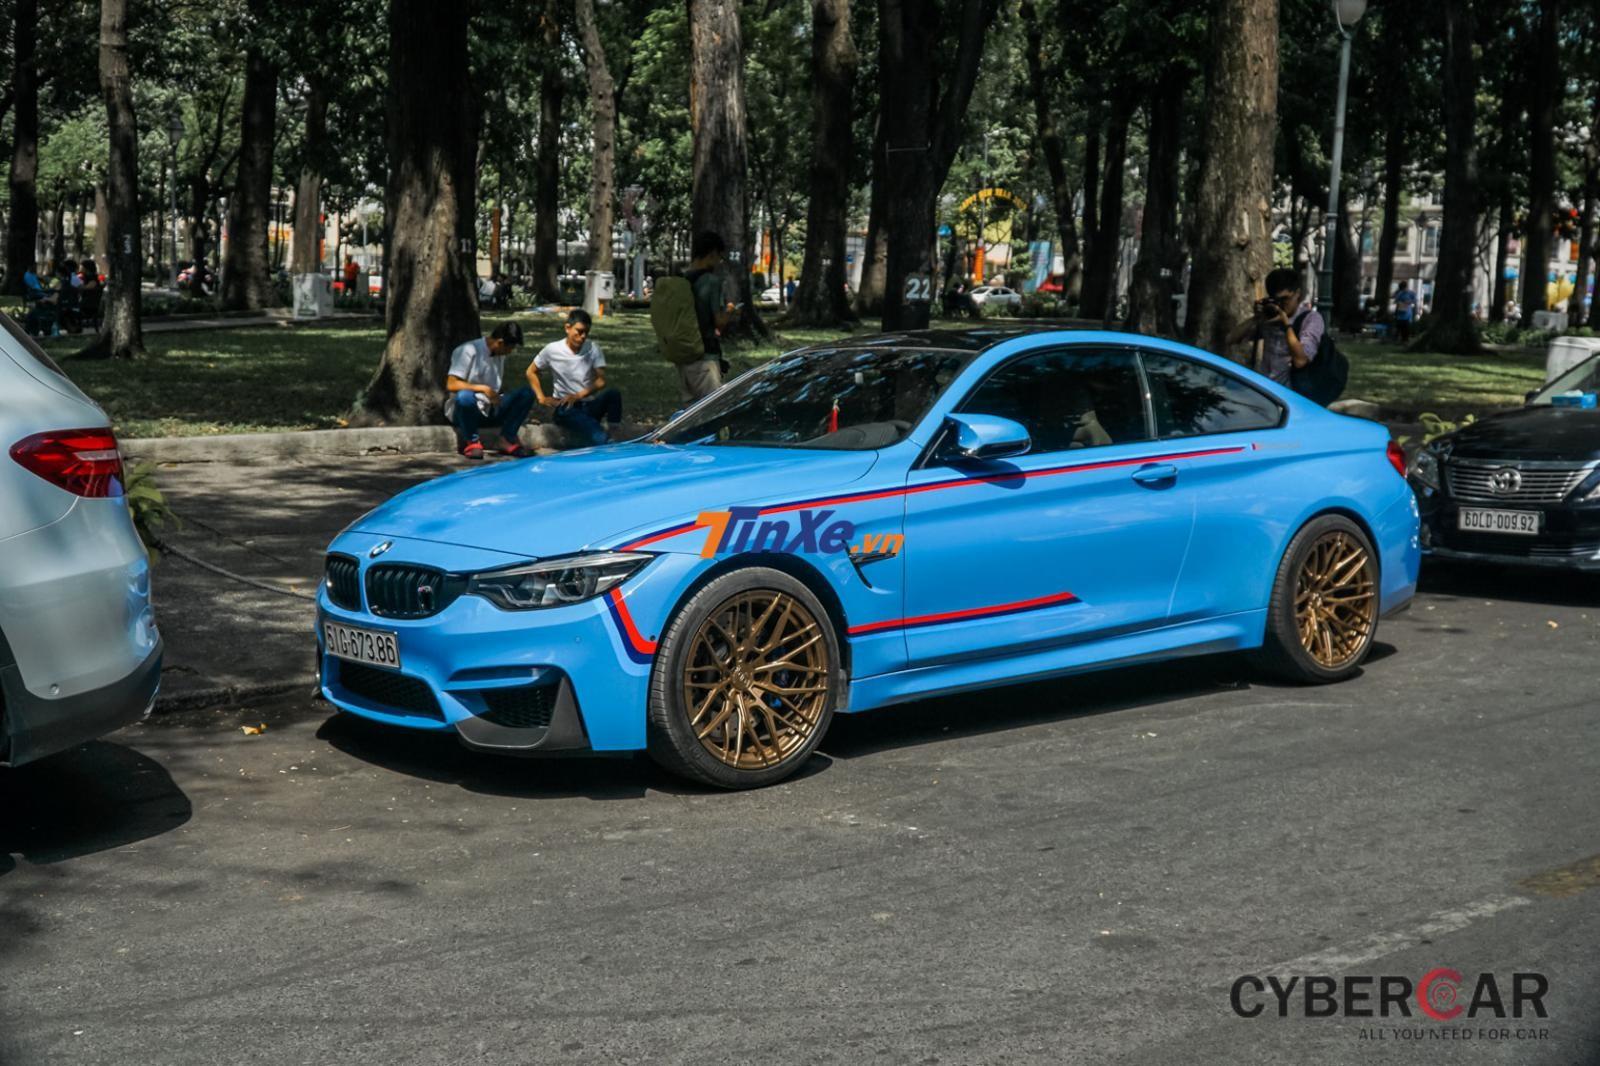  Chiếc BMW M4 F82 Coupe của biker Sài thành gây sự chú ý bằng nước sơn màu xanh Yas Marina Blue